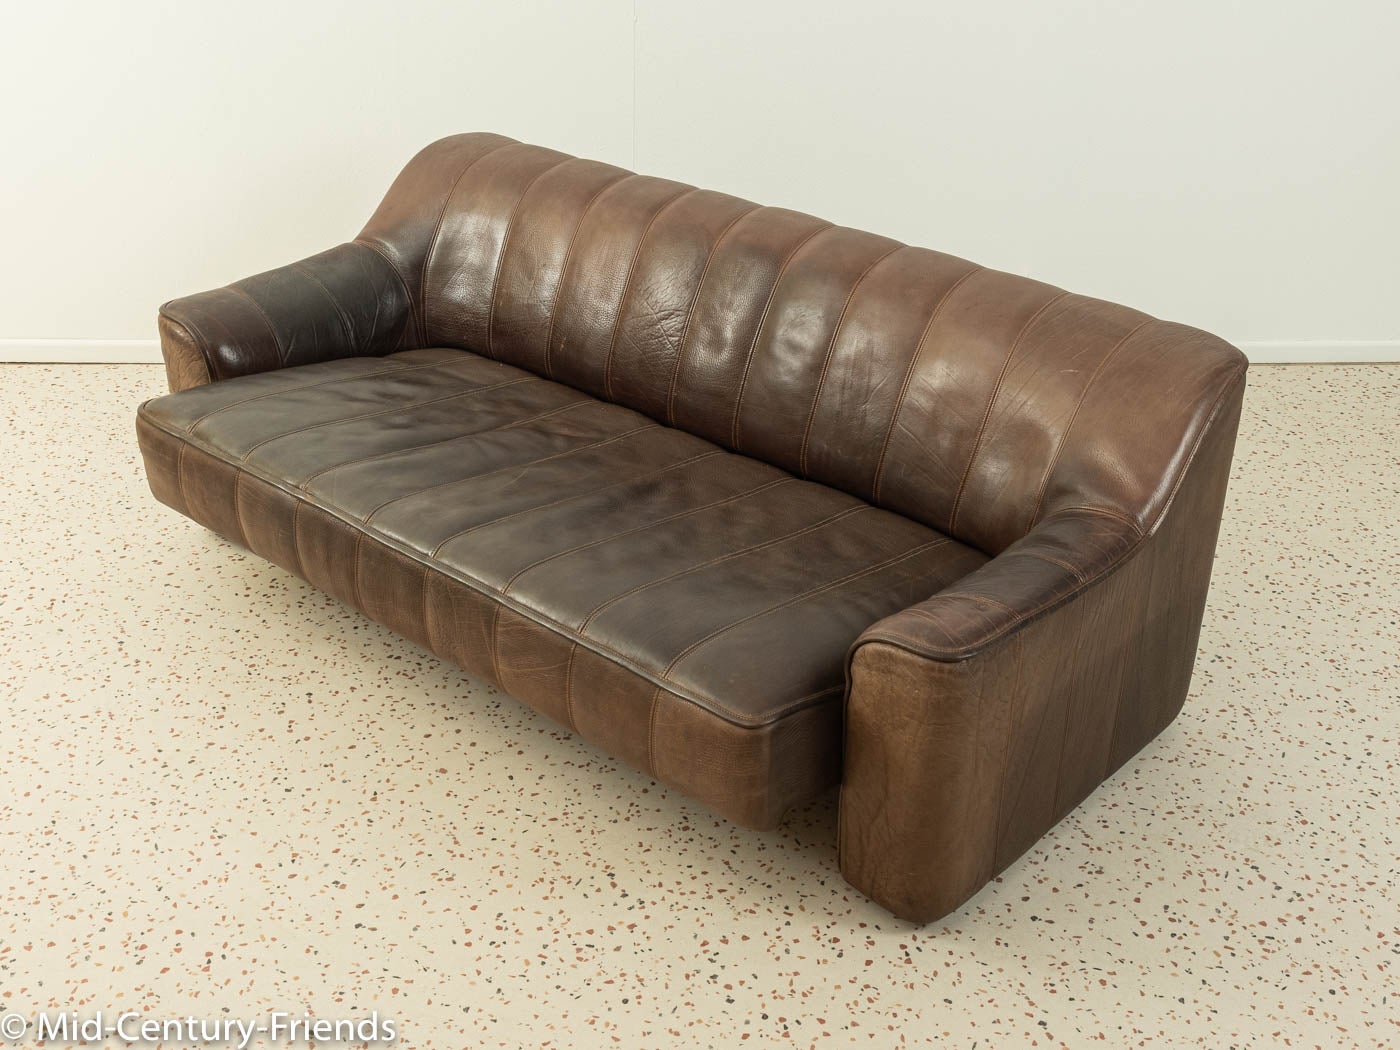 Klassisches Sofa aus den 1970er Jahren. Modell DS-44 von DeSede mit dem markanten Originalbezug aus braunem Büffelleder und groben Nähten. Die Sitzfläche des Dreisitzers kann mit einer einfachen Bewegung vergrößert werden und verwandelt sich in